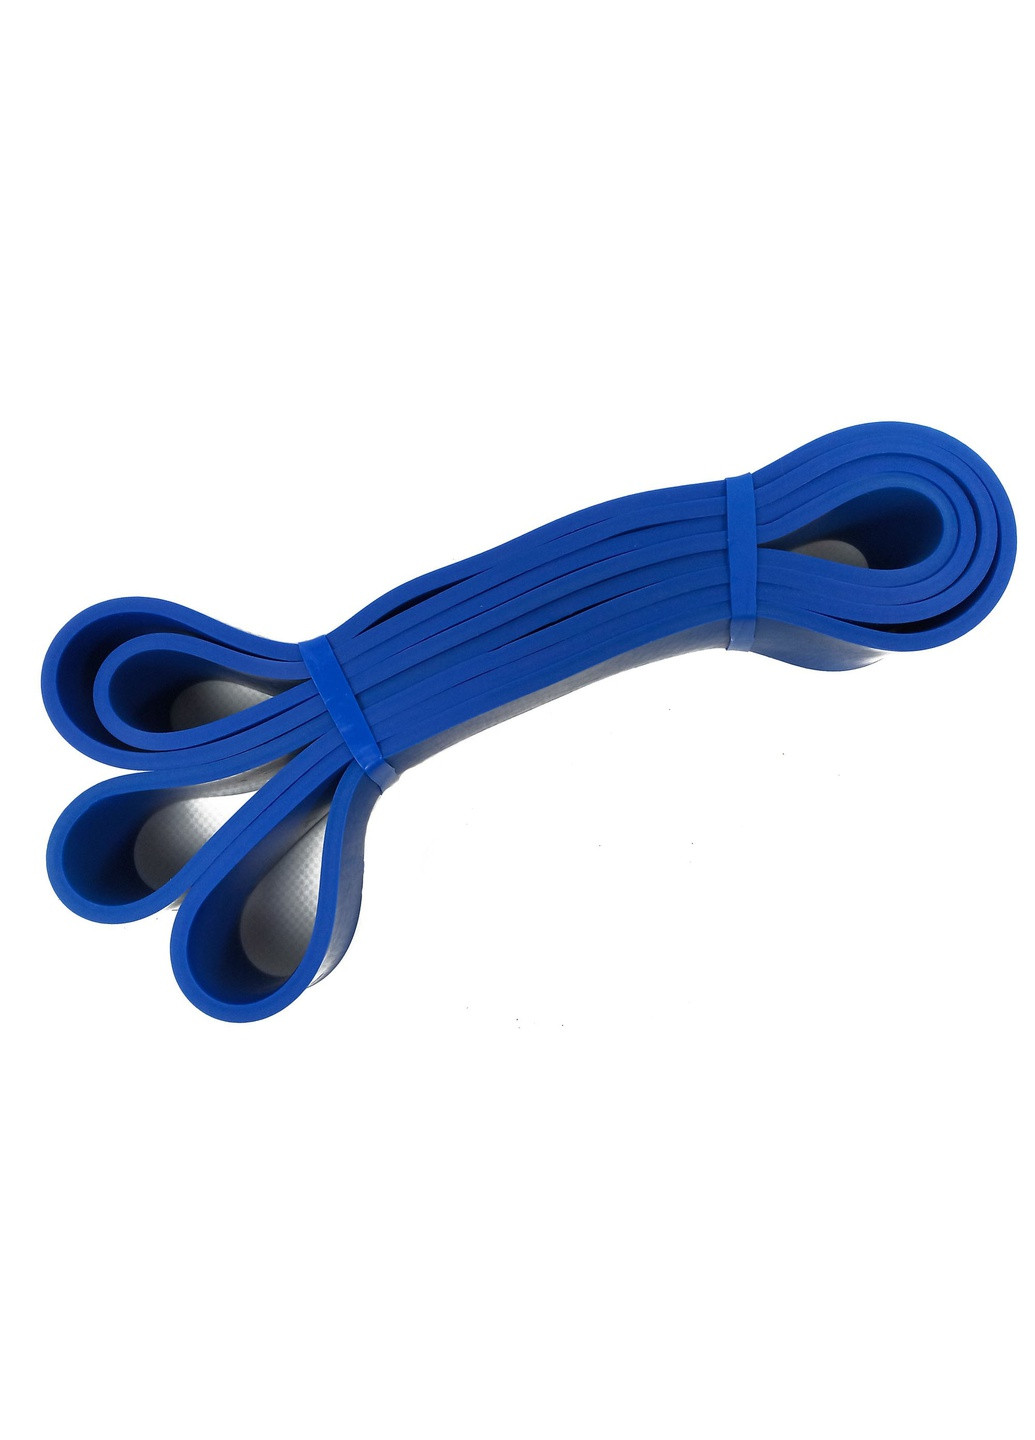 Резиновая петля Power Bands 19-65 кг (для фитнеса, тренировок, подтягиваний, резина для турника, резинка-эспандер) ST1965-Bl EasyFit (241214852)